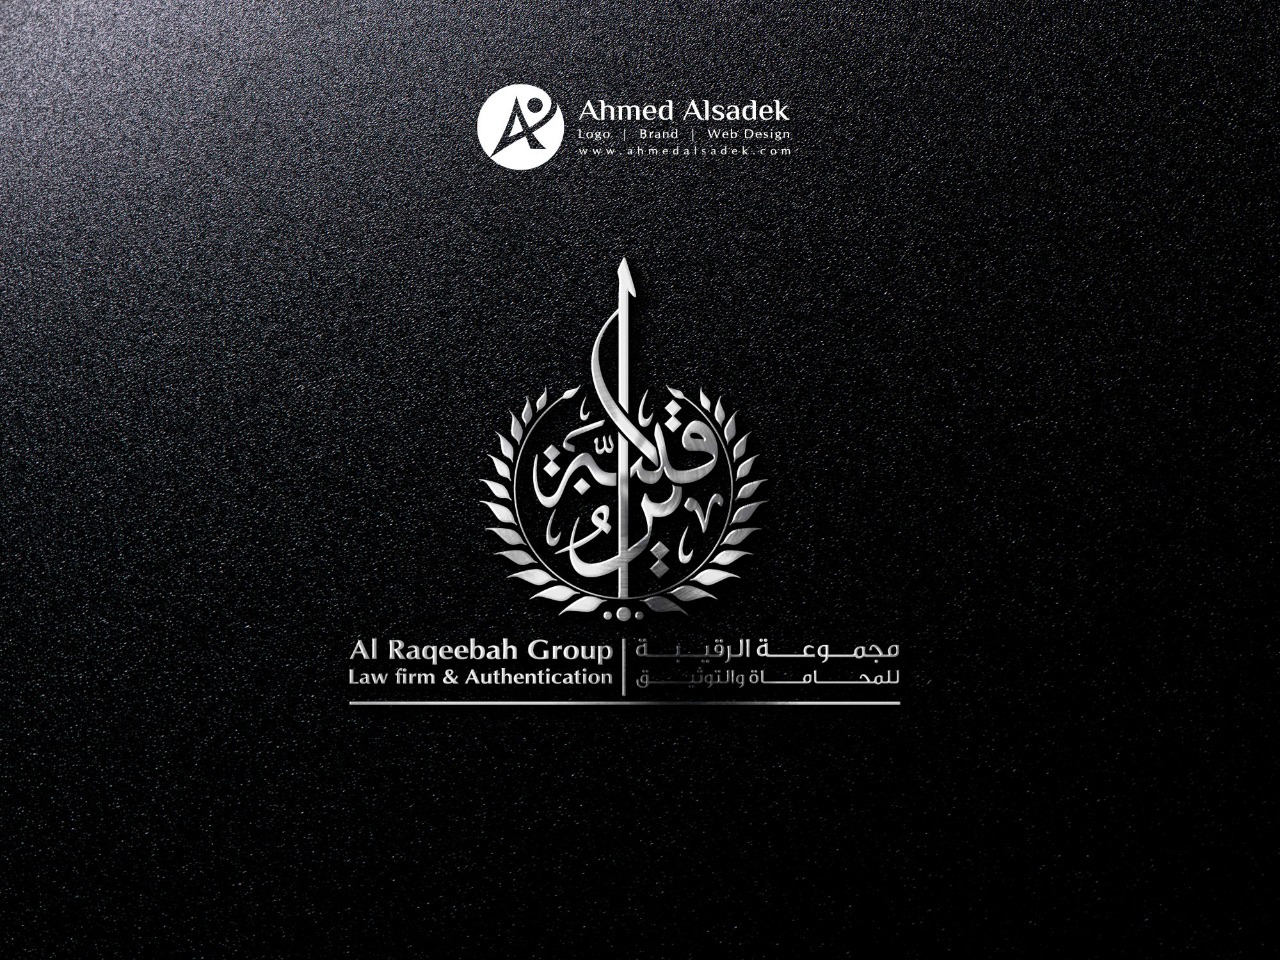  تصميم شعار مجموعة الرقيب للمحاماه في المدينة المنورة - السعودية 